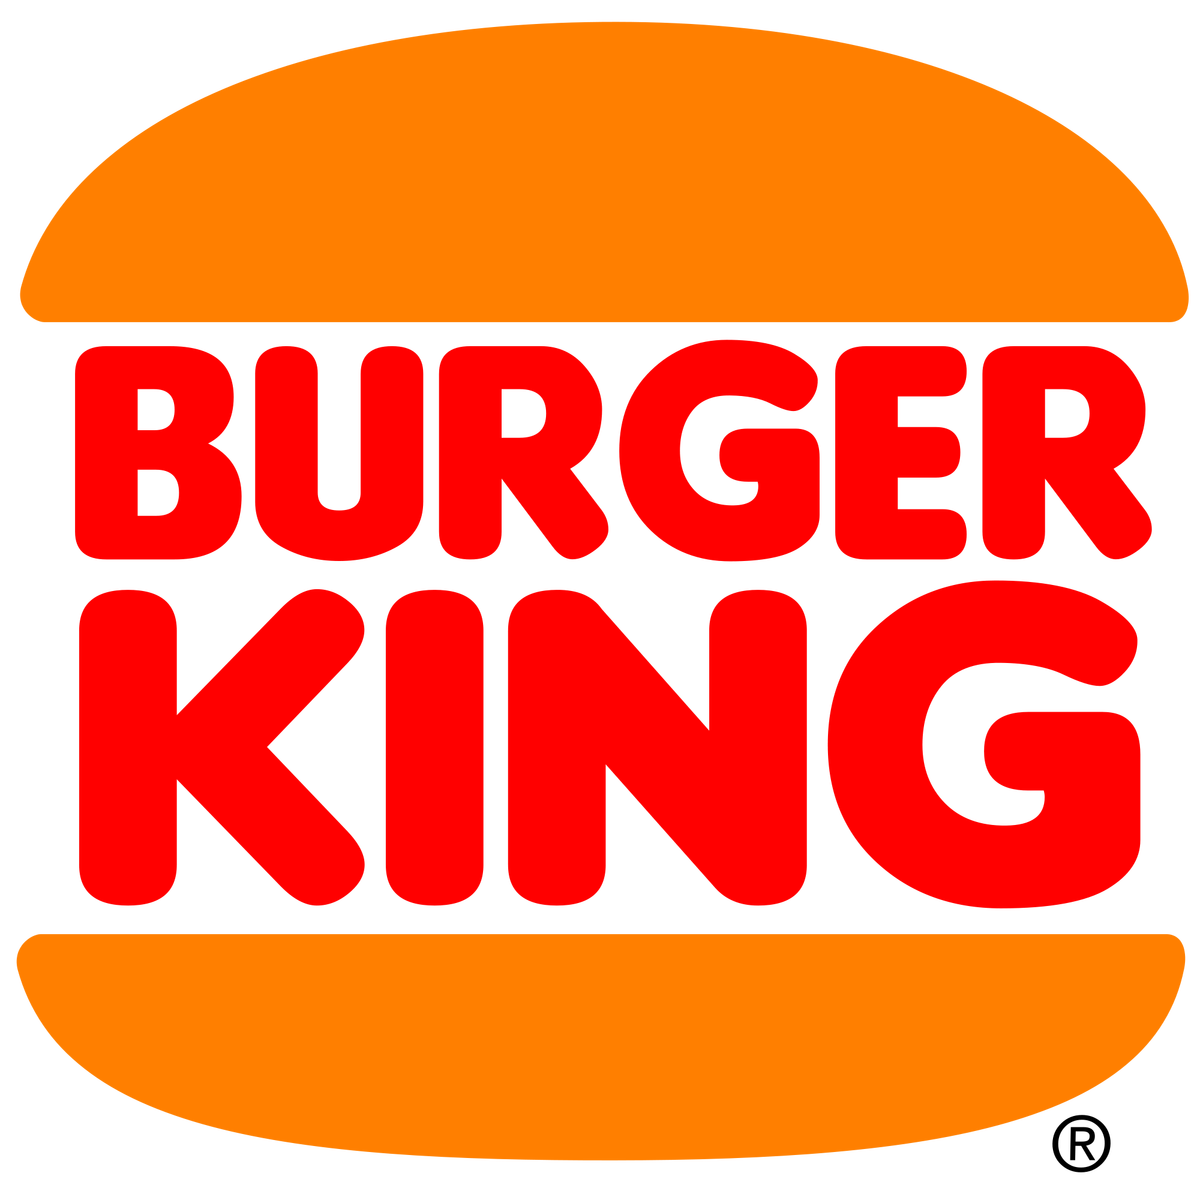 King Hamburger Restaurant Burger Logo The PNG Image